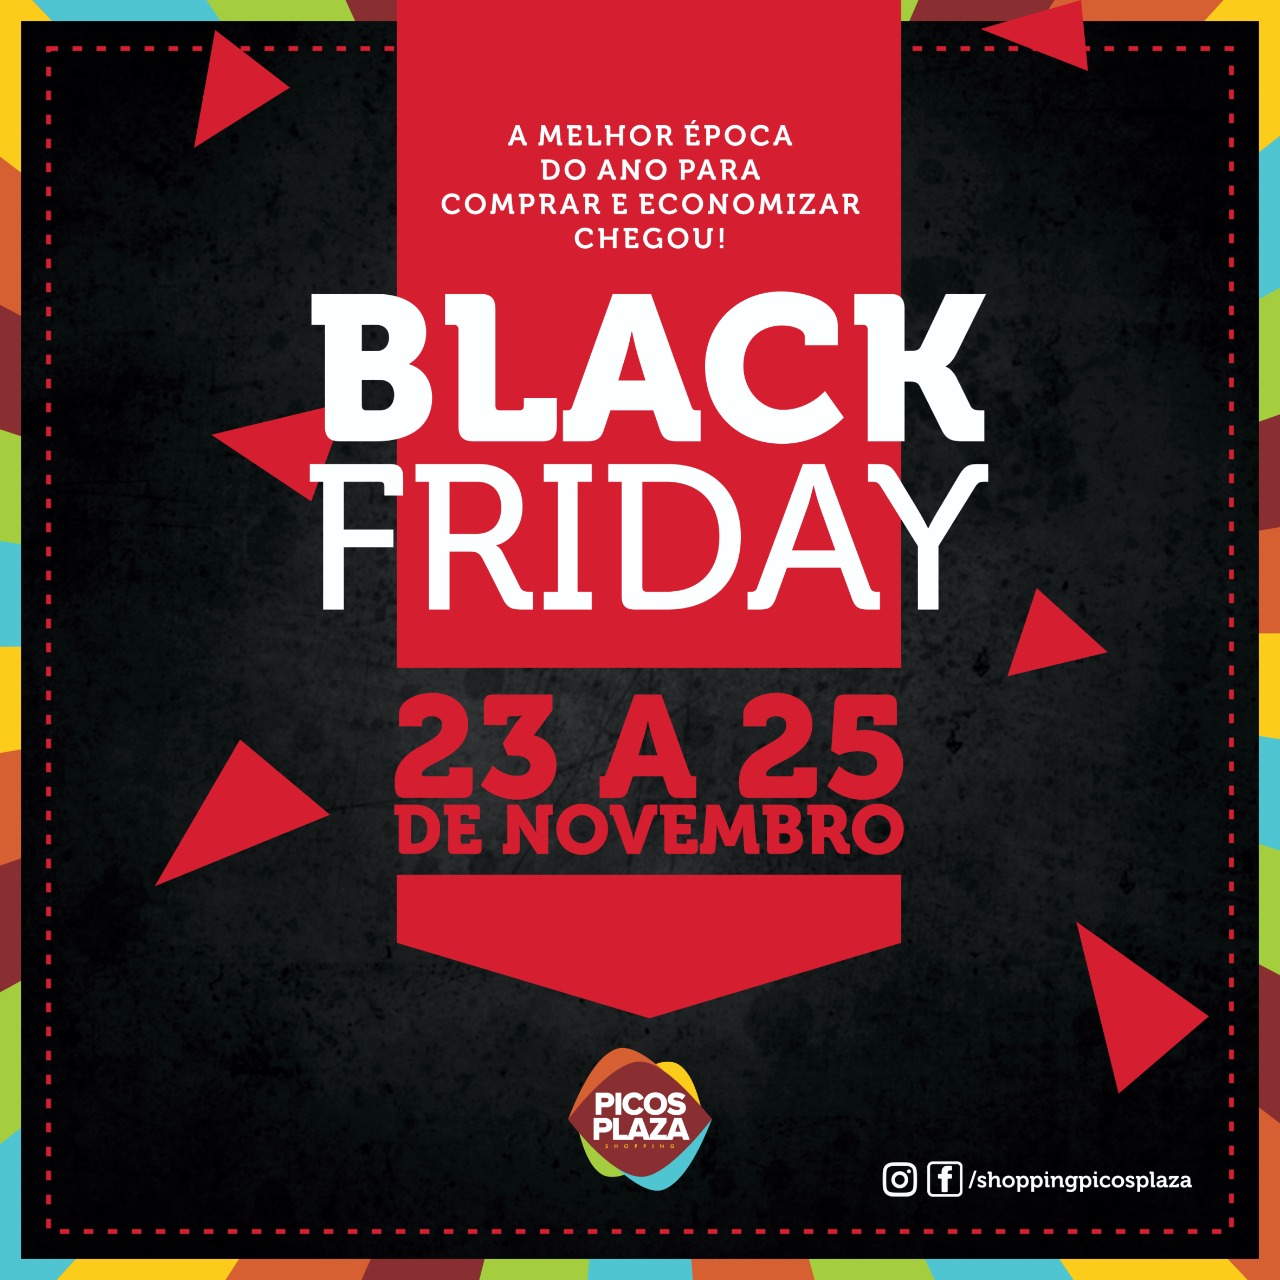 Black Friday Picos Plaza Shopping: 3 dias de ofertas, show e um super feirão de carros